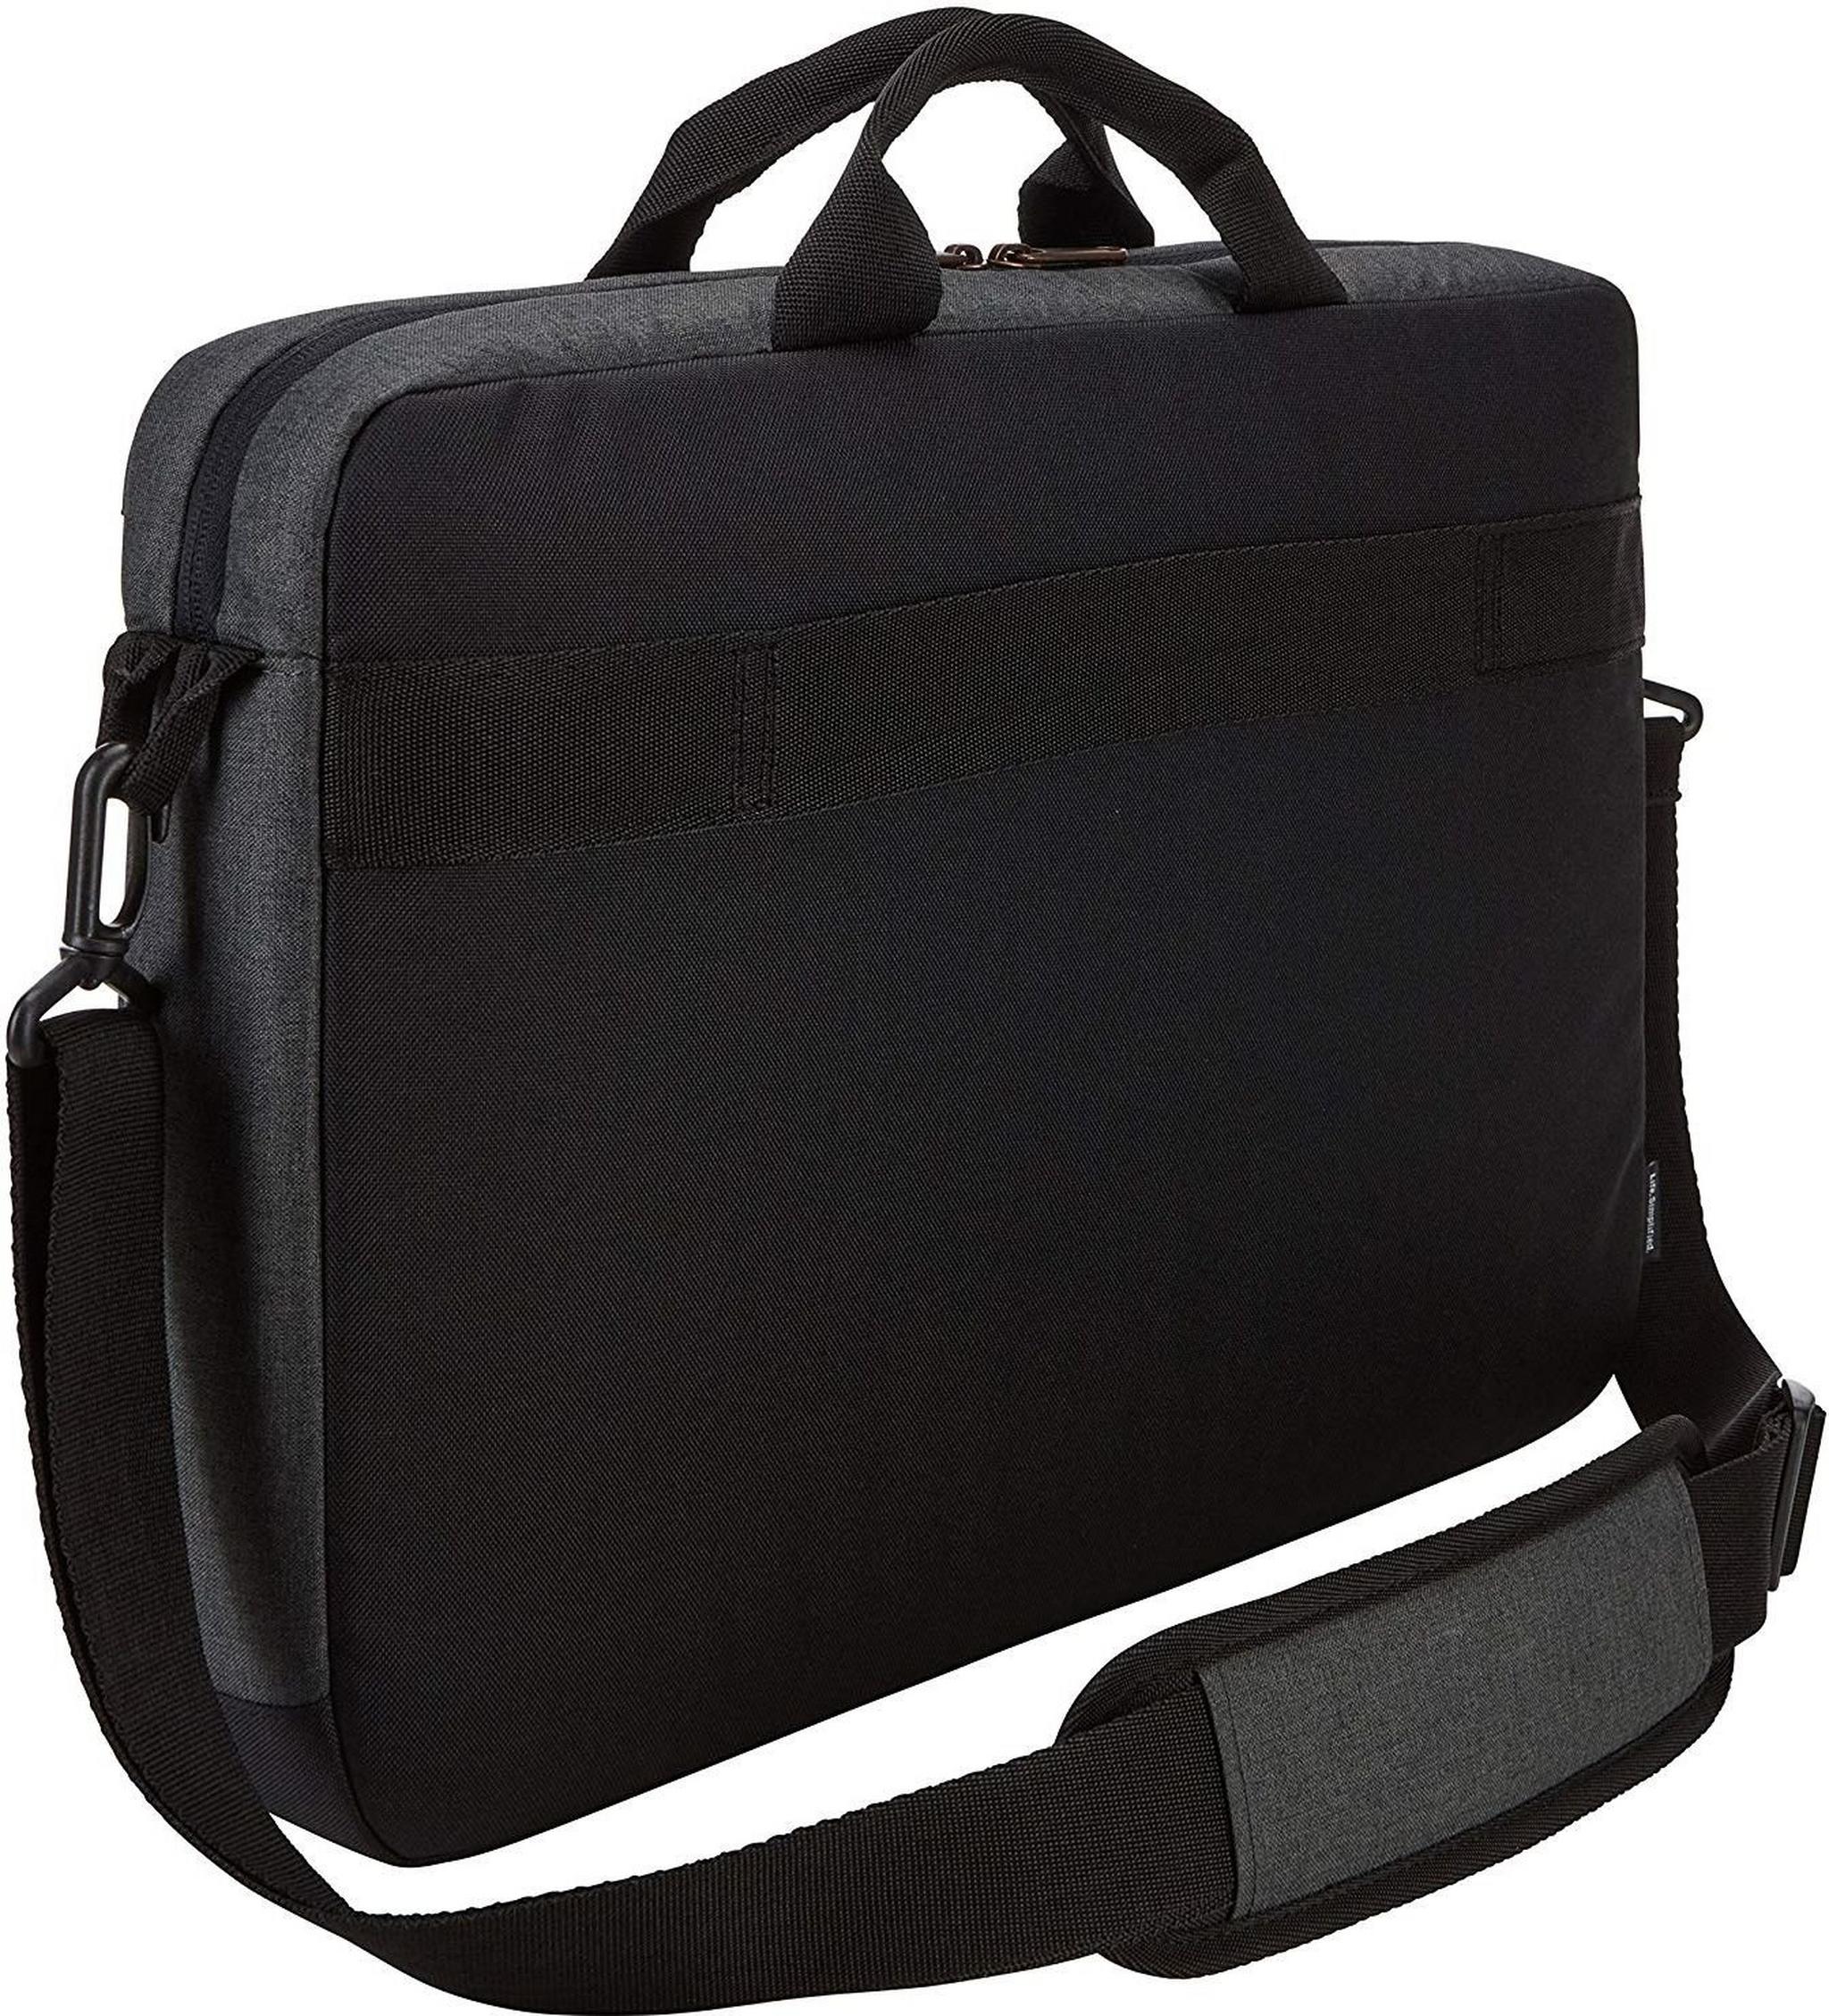 Case Logic 15.6-inch Top-loader Laptop Bag (ERAA116OB)